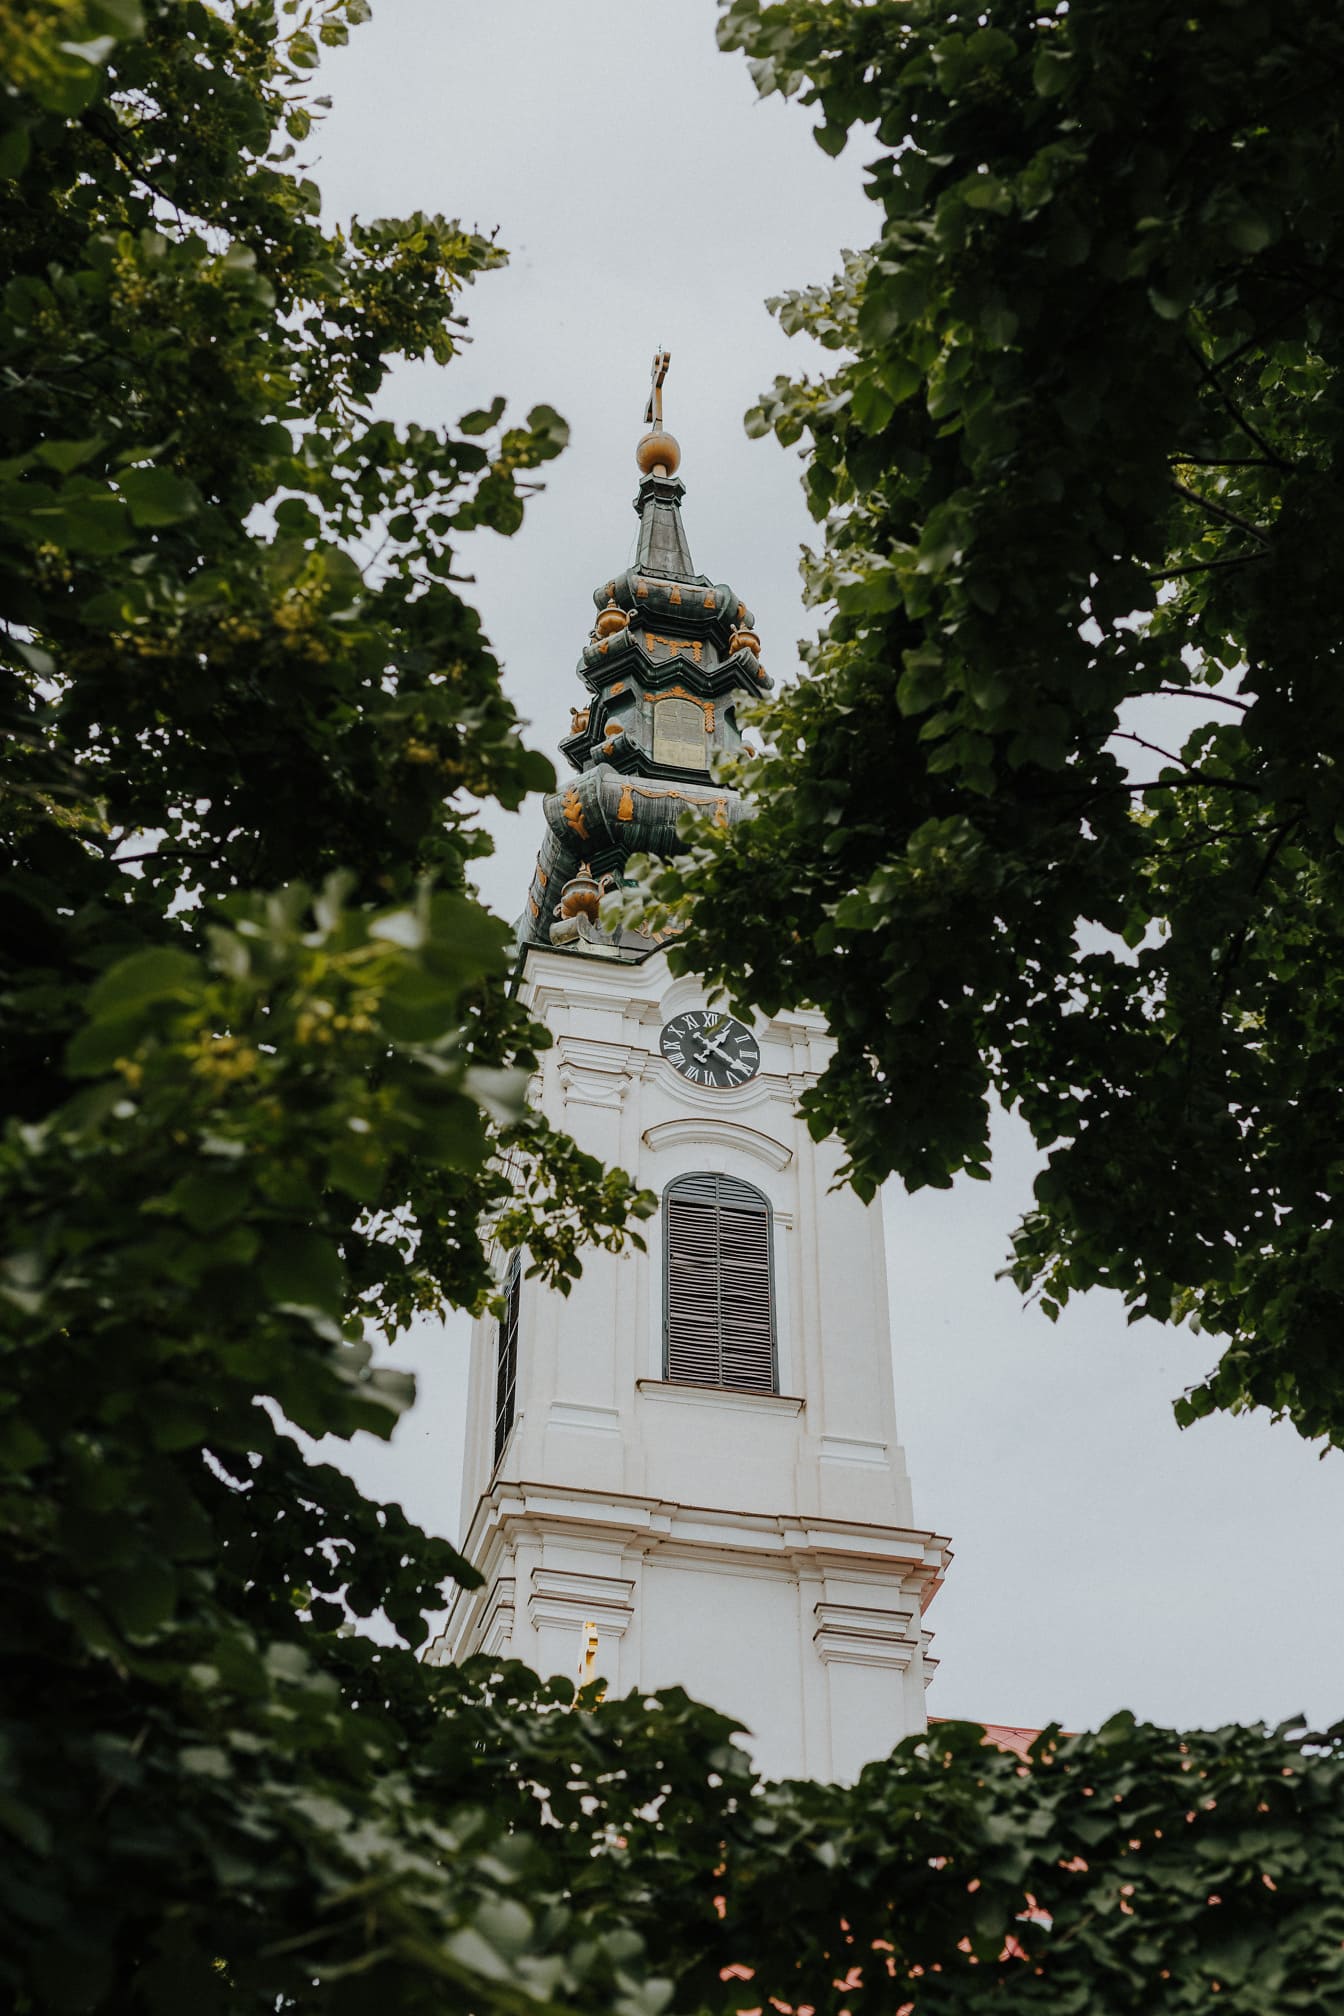 白色东正教教堂塔楼在树林中